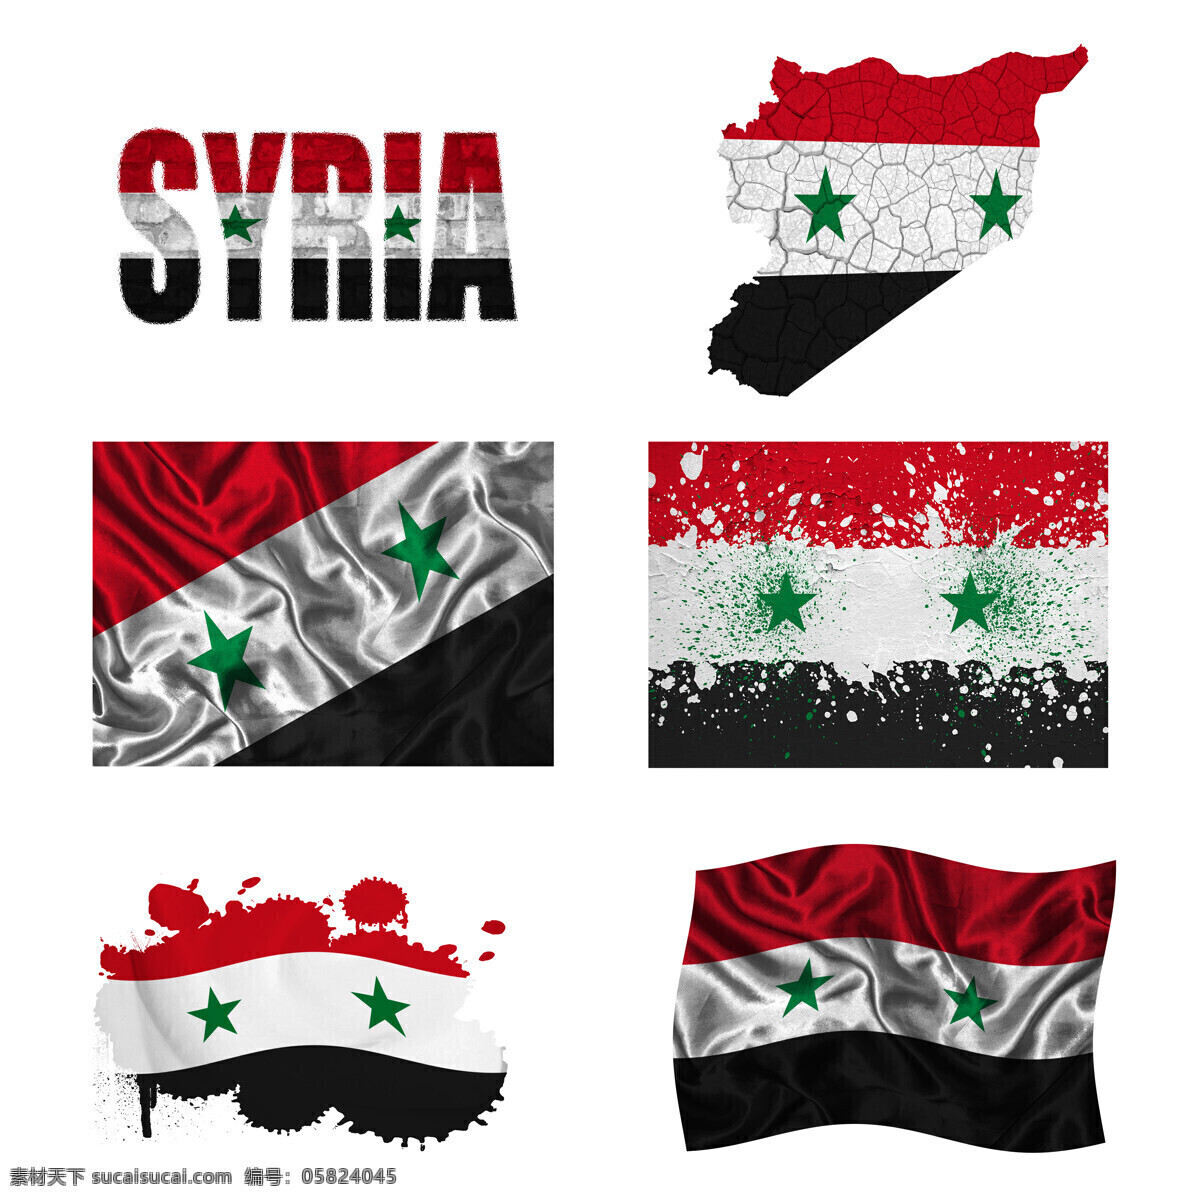 叙利亚 国旗 地图 叙利亚国旗 旗帜 国旗图案 国旗图片 生活百科